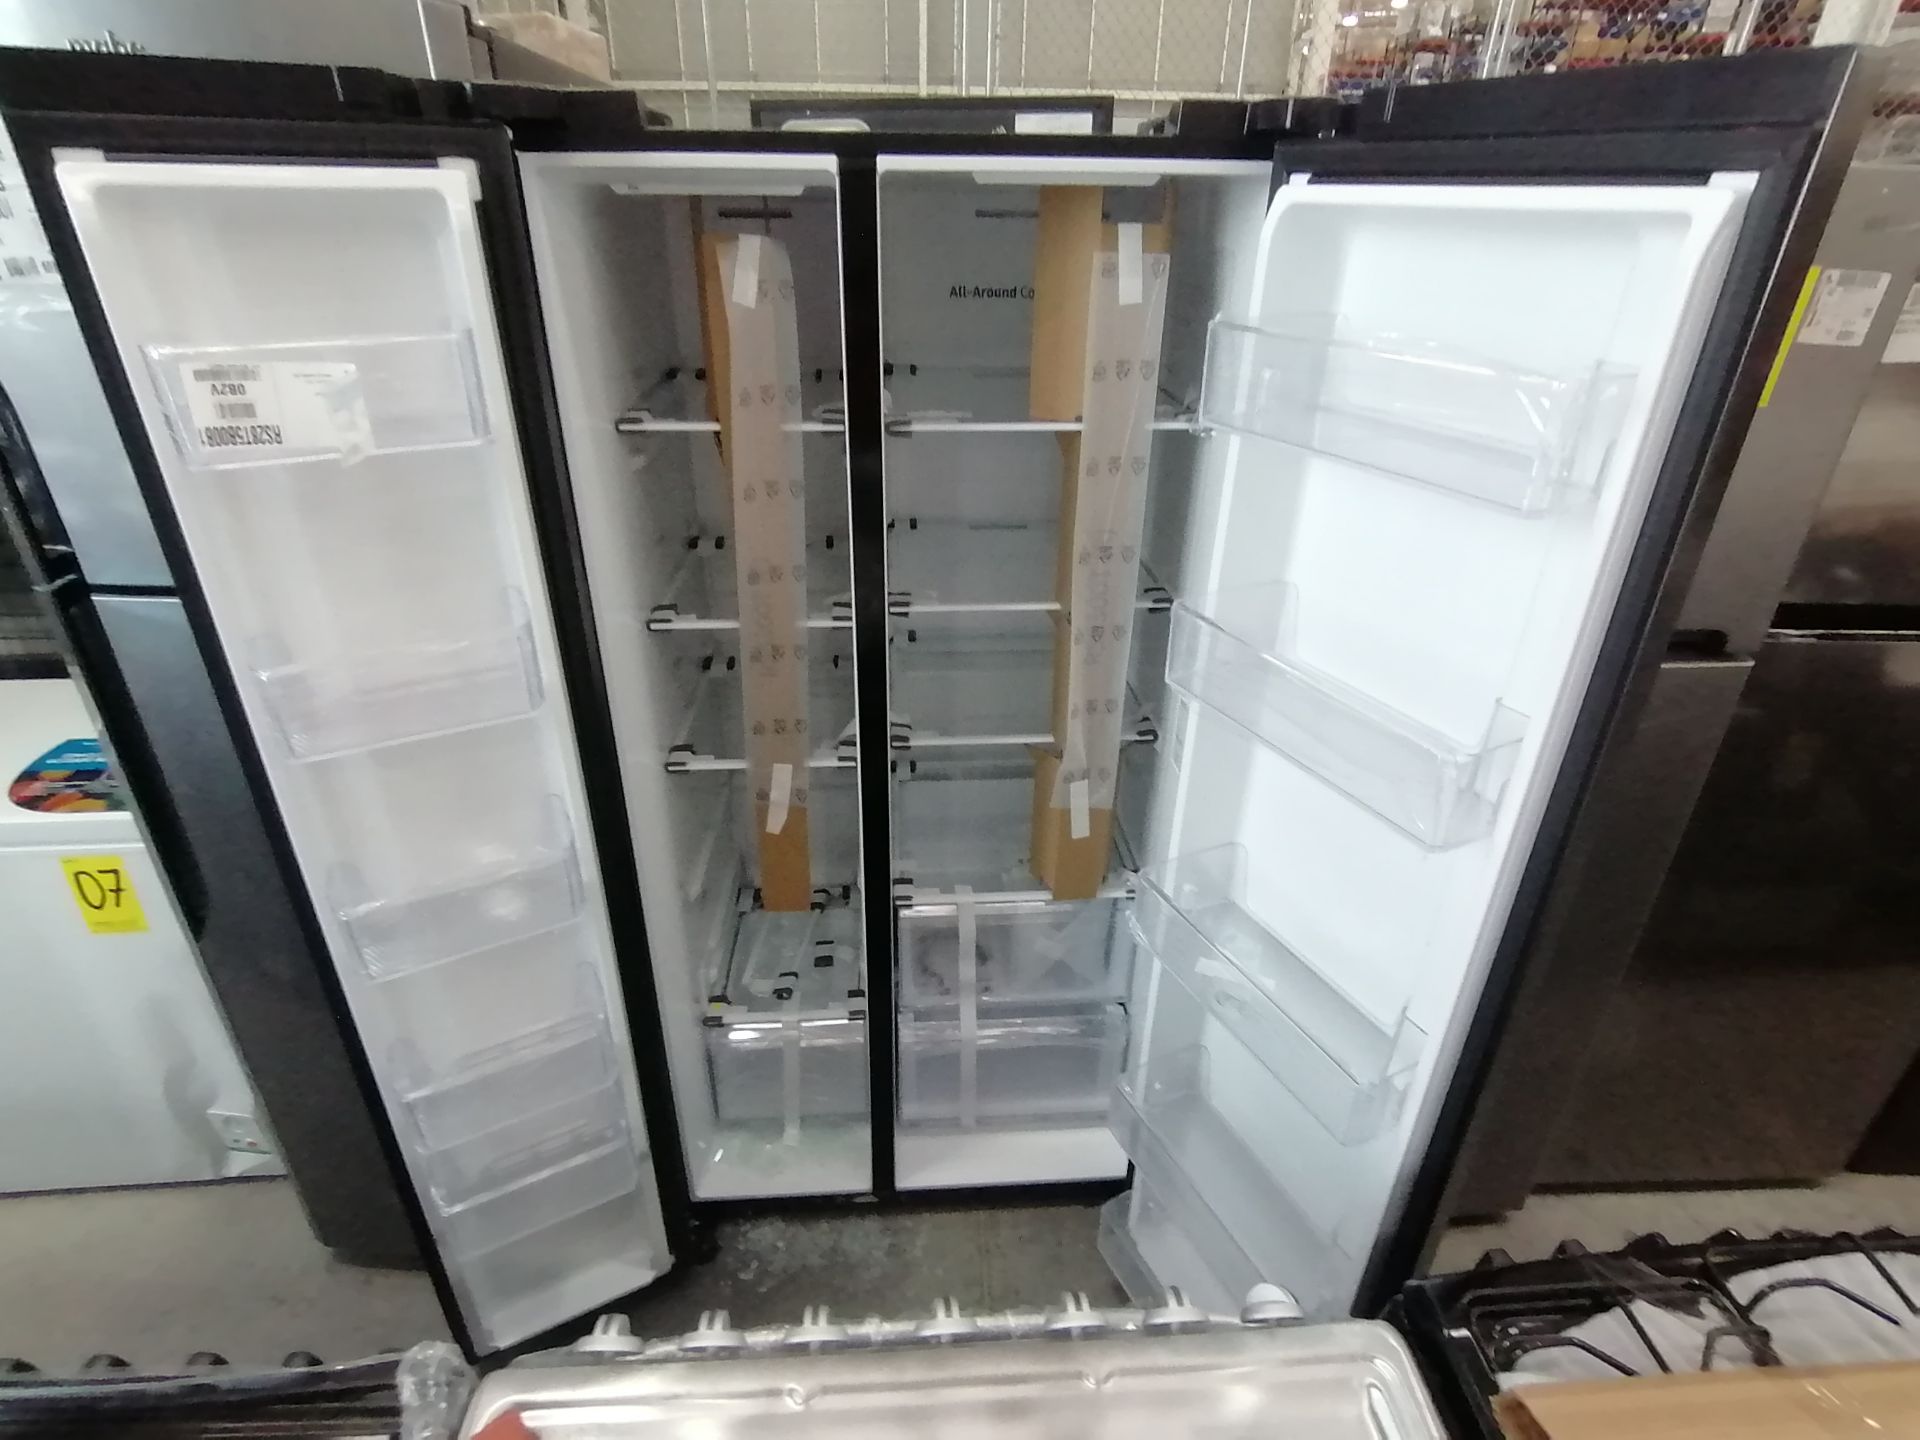 1 Refrigerador Marca Samsung, Modelo RS28T5B00B1, Serie 0B2V4BBT300531L, Color Gris, Golpeado, Favo - Image 16 of 17